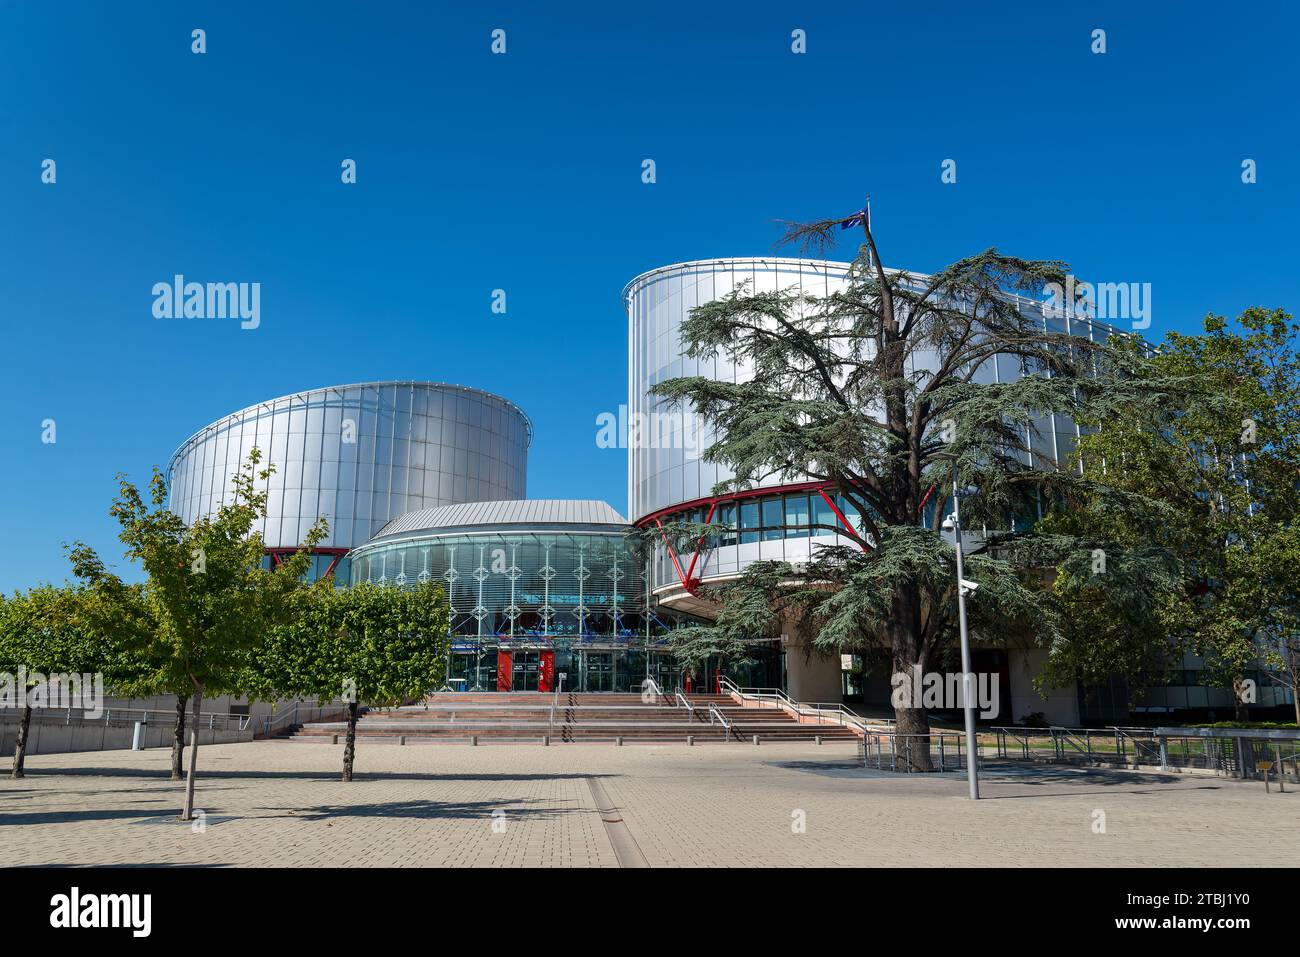 Cour européenne des droits de l'homme, bâtiment moderne dans le quartier européen, Strasbourg France Banque D'Images